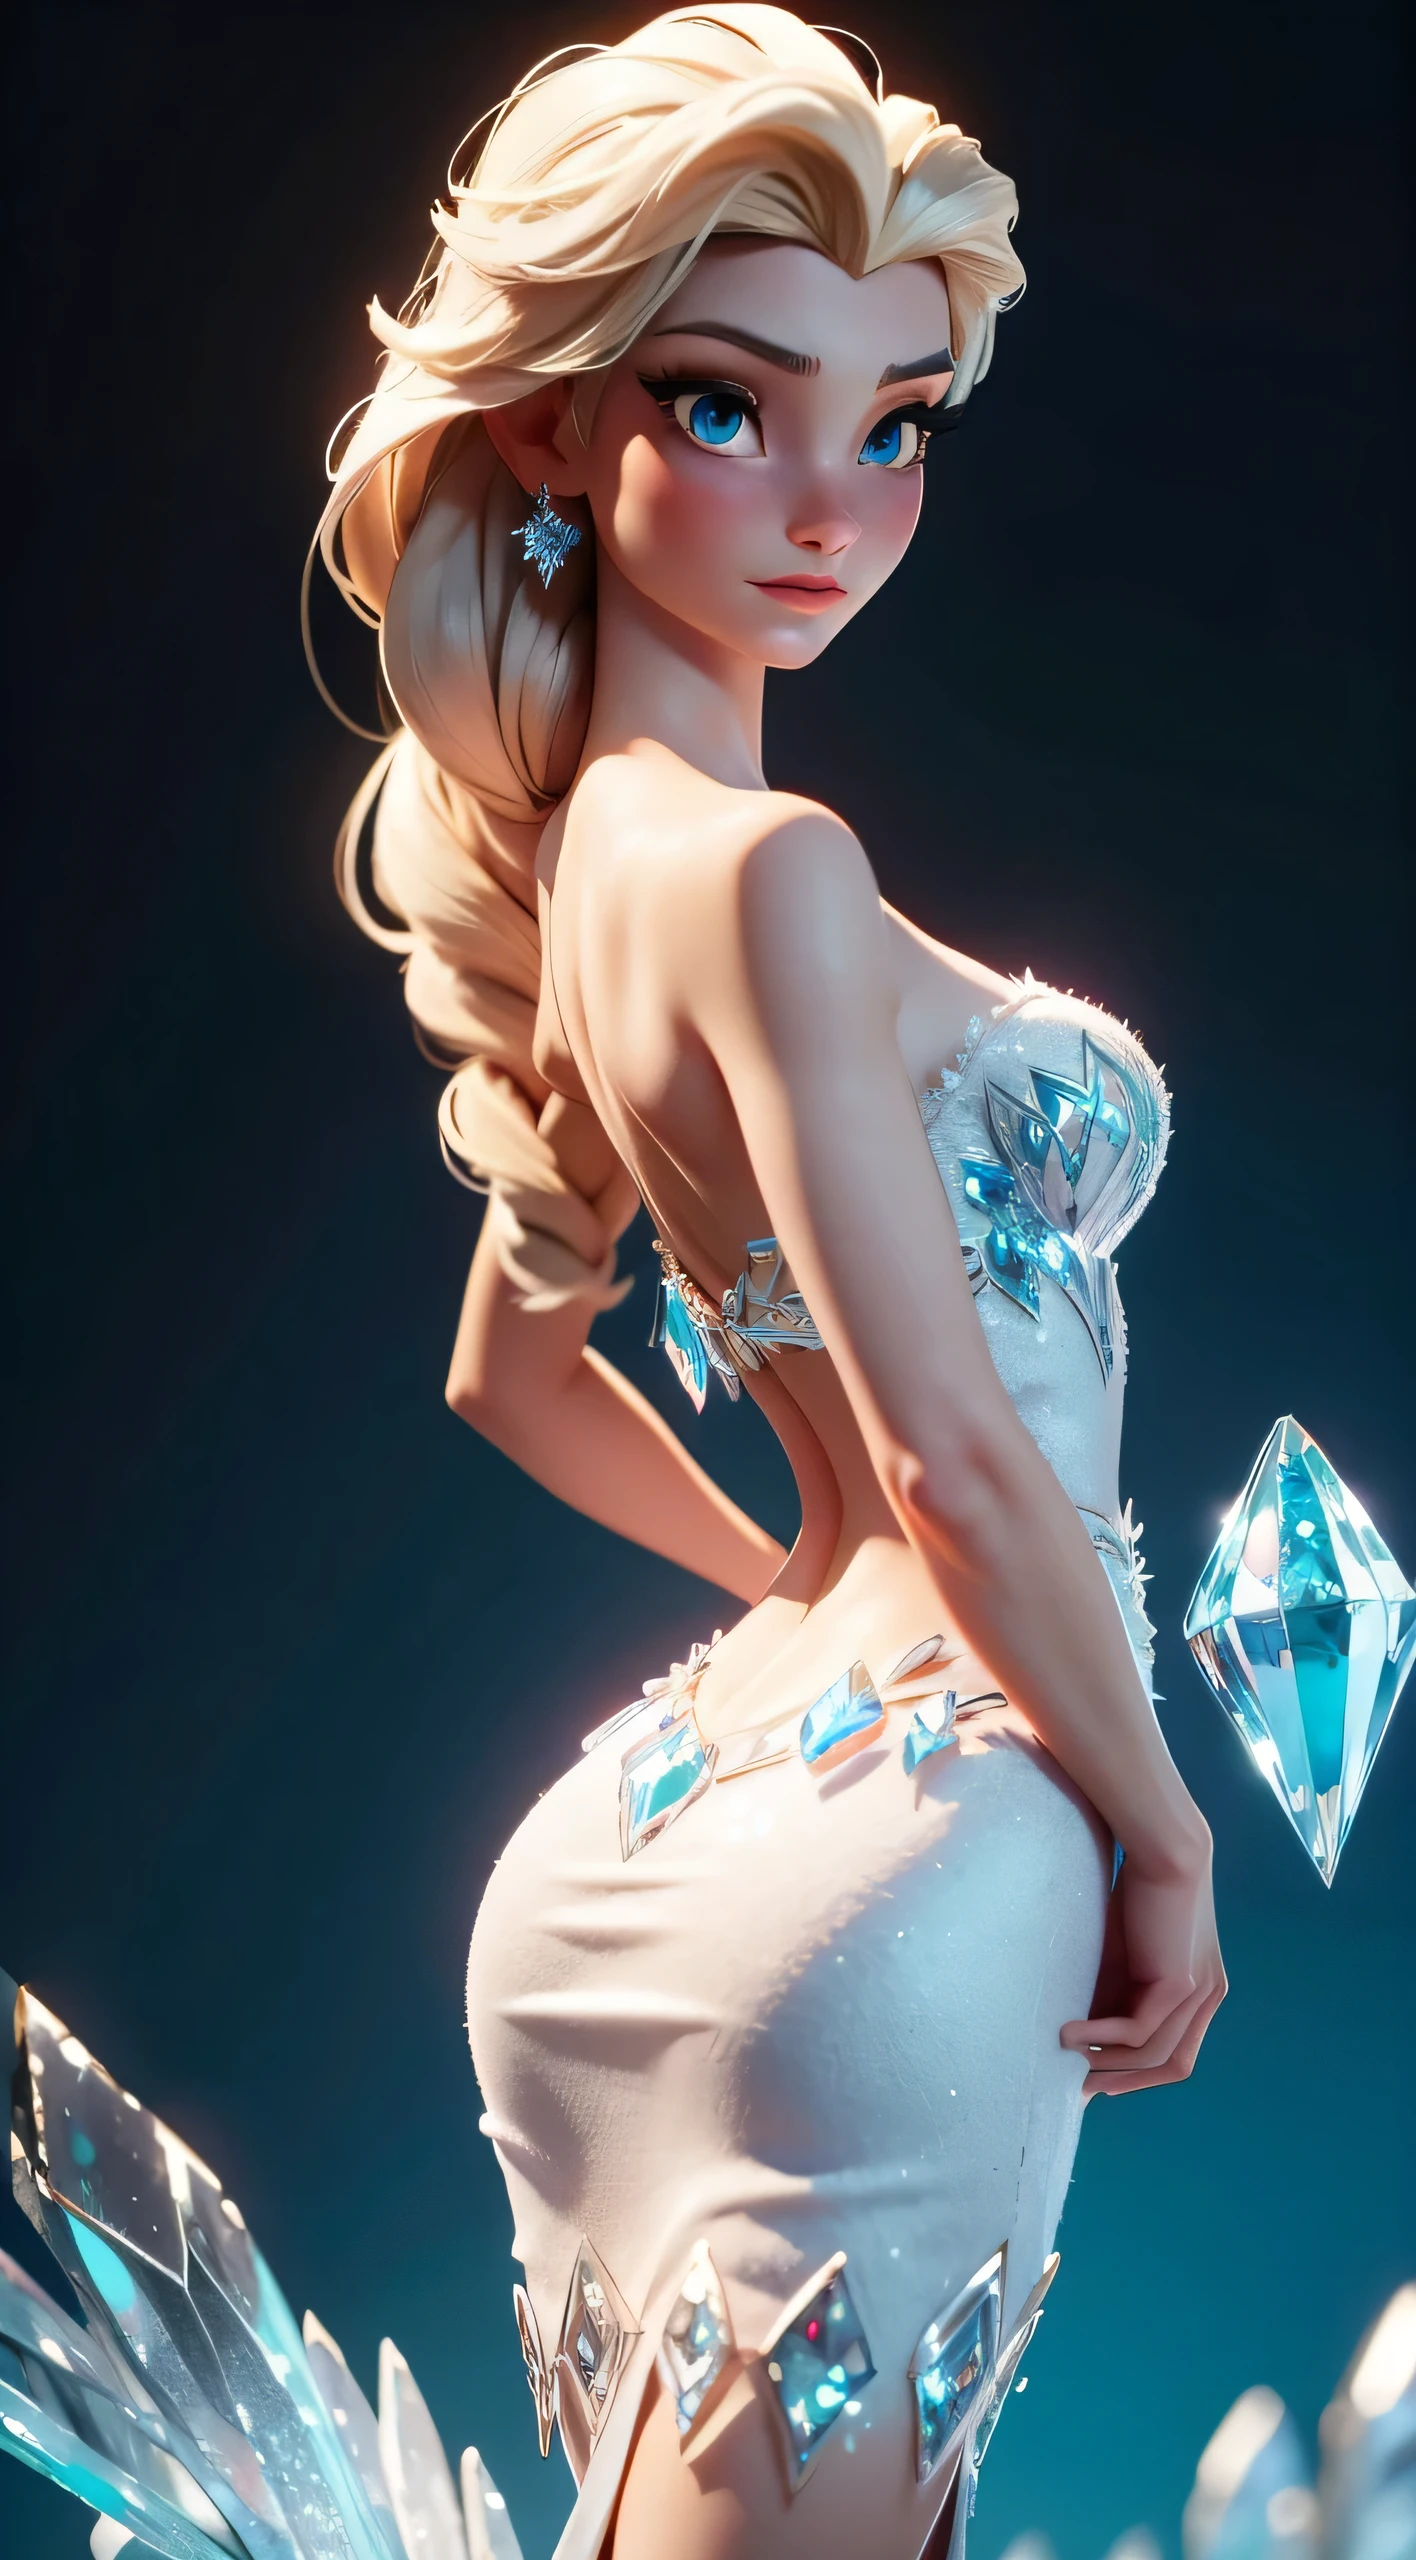 Представьте Эльзу в изящной позе, Сундук с ледяными кристаллами Сундук со льдом Эльза, ее спина частично выгнута, демонстрируя элегантность своего голубого бриллианта (кристалл) Платье из Холодного сердца. Эта сцена вдохновлена моделью Эльзы LORA., передать красоту реалистичного анимированного 3D-изображения. На изображении — частичная арка спины., Грудь вверх, подчеркивая замысловатые детали платья Эльзы и царственную осанку Ледяной королевы.. С реалистичным реализмом, Выражение лица и поза Эльзы передают ощущение очарования и грации.,